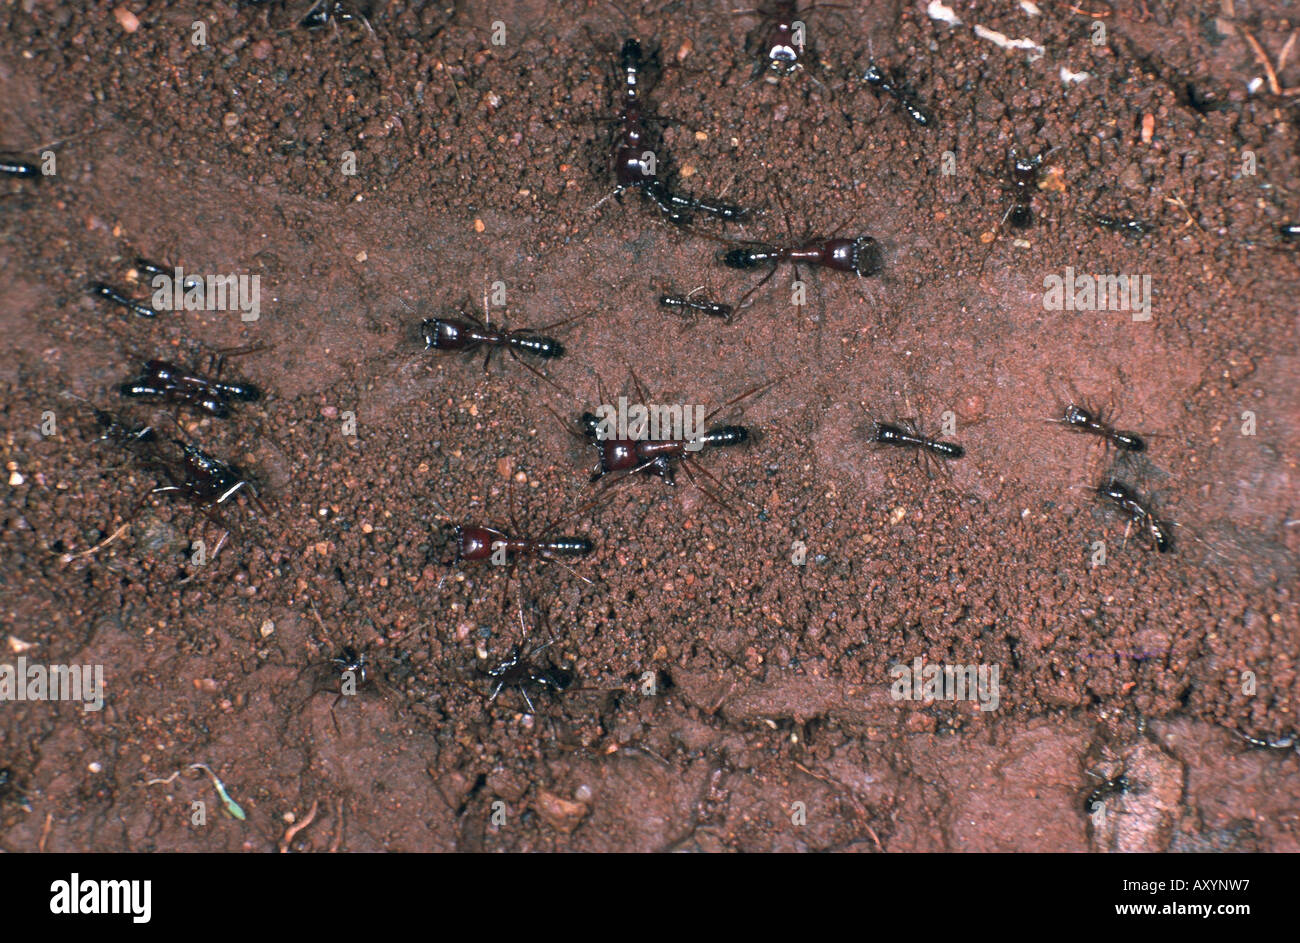 legionary ants, army ants (Dorylinae), ant trail Stock Photo